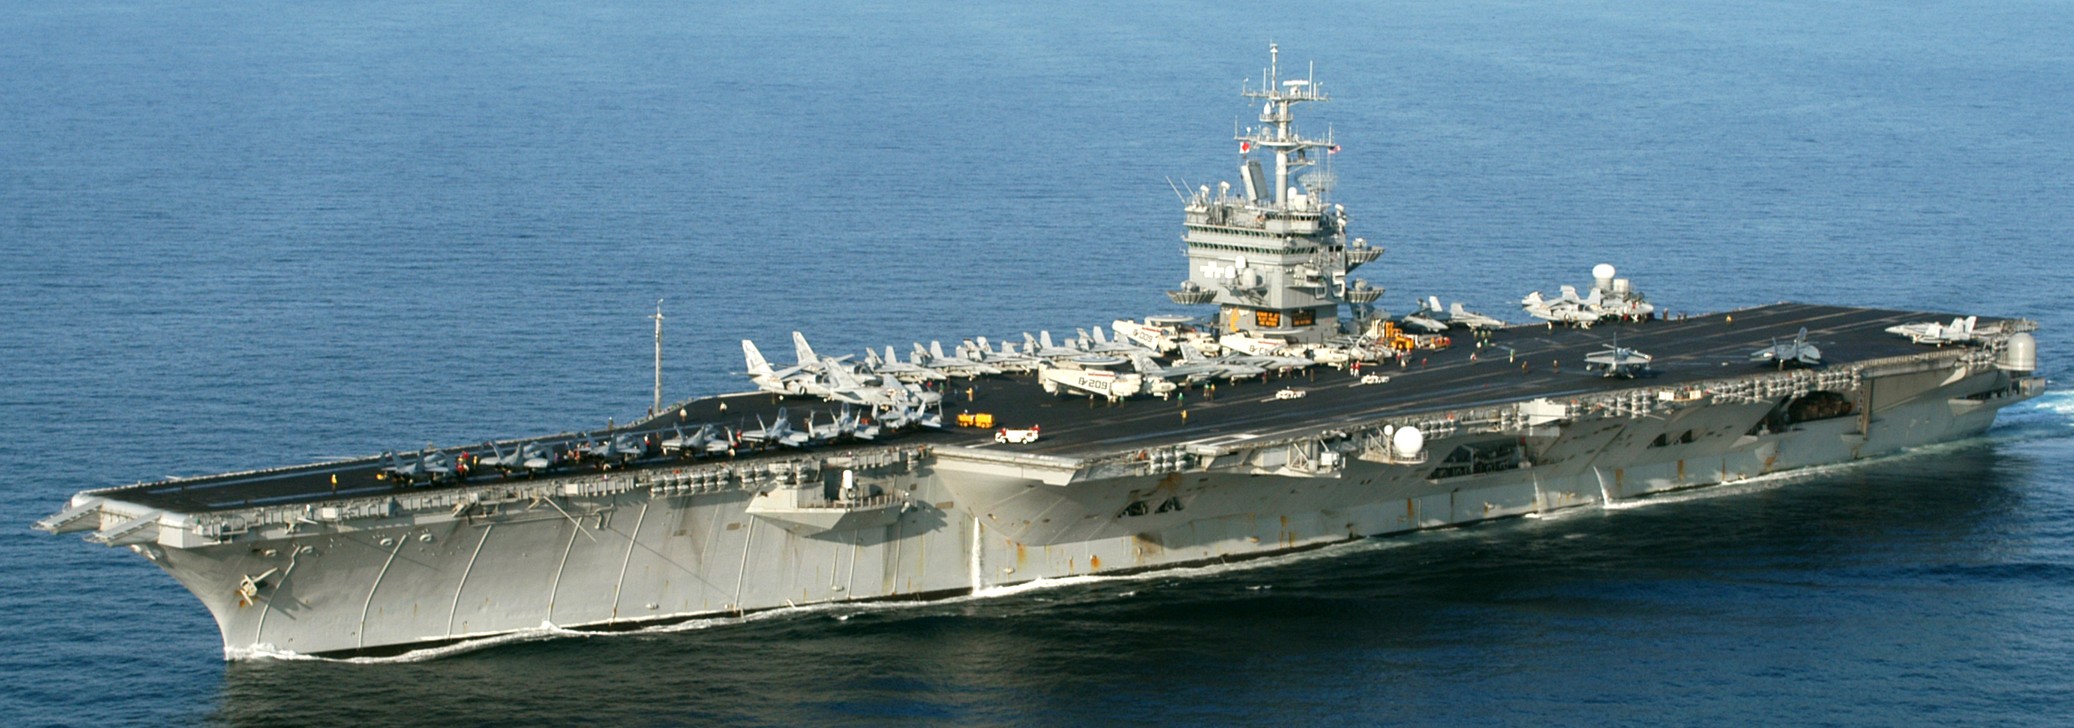 uss enterprise cvn-65 cvw-1 2003 83 aircraft carrier